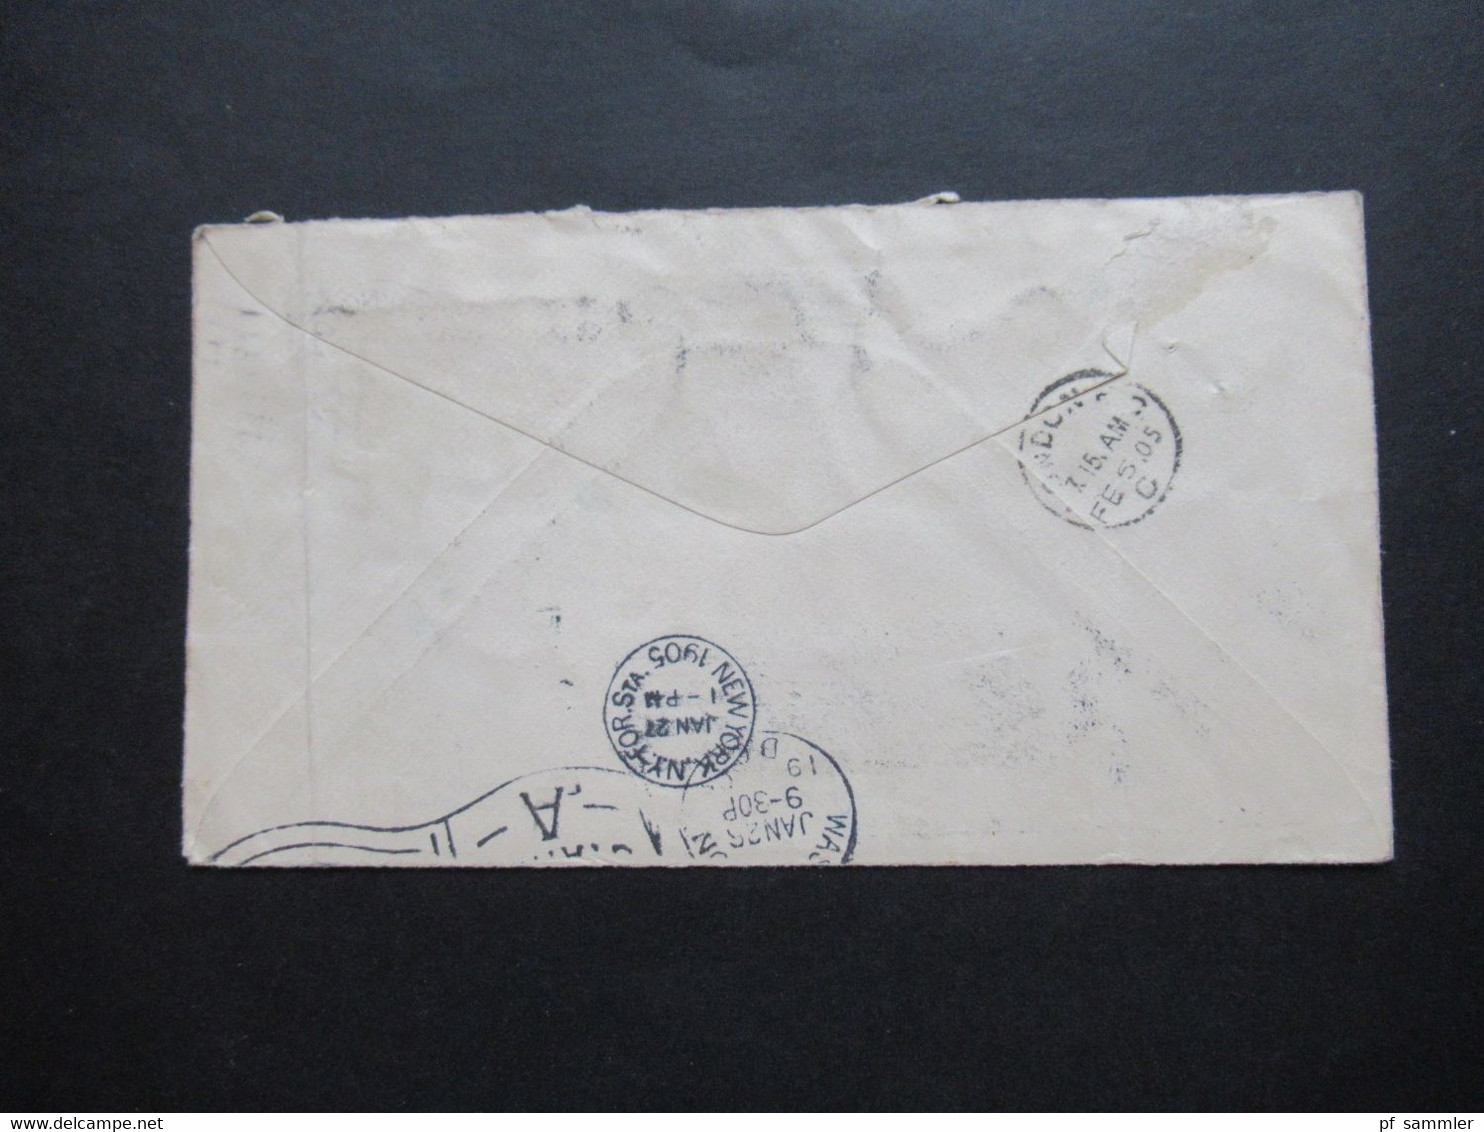 USA 1905 GA Umschlag mit Fahnenstempel Washington DC Station A und 3 F.B.B. Stempel nach London / Nachporto